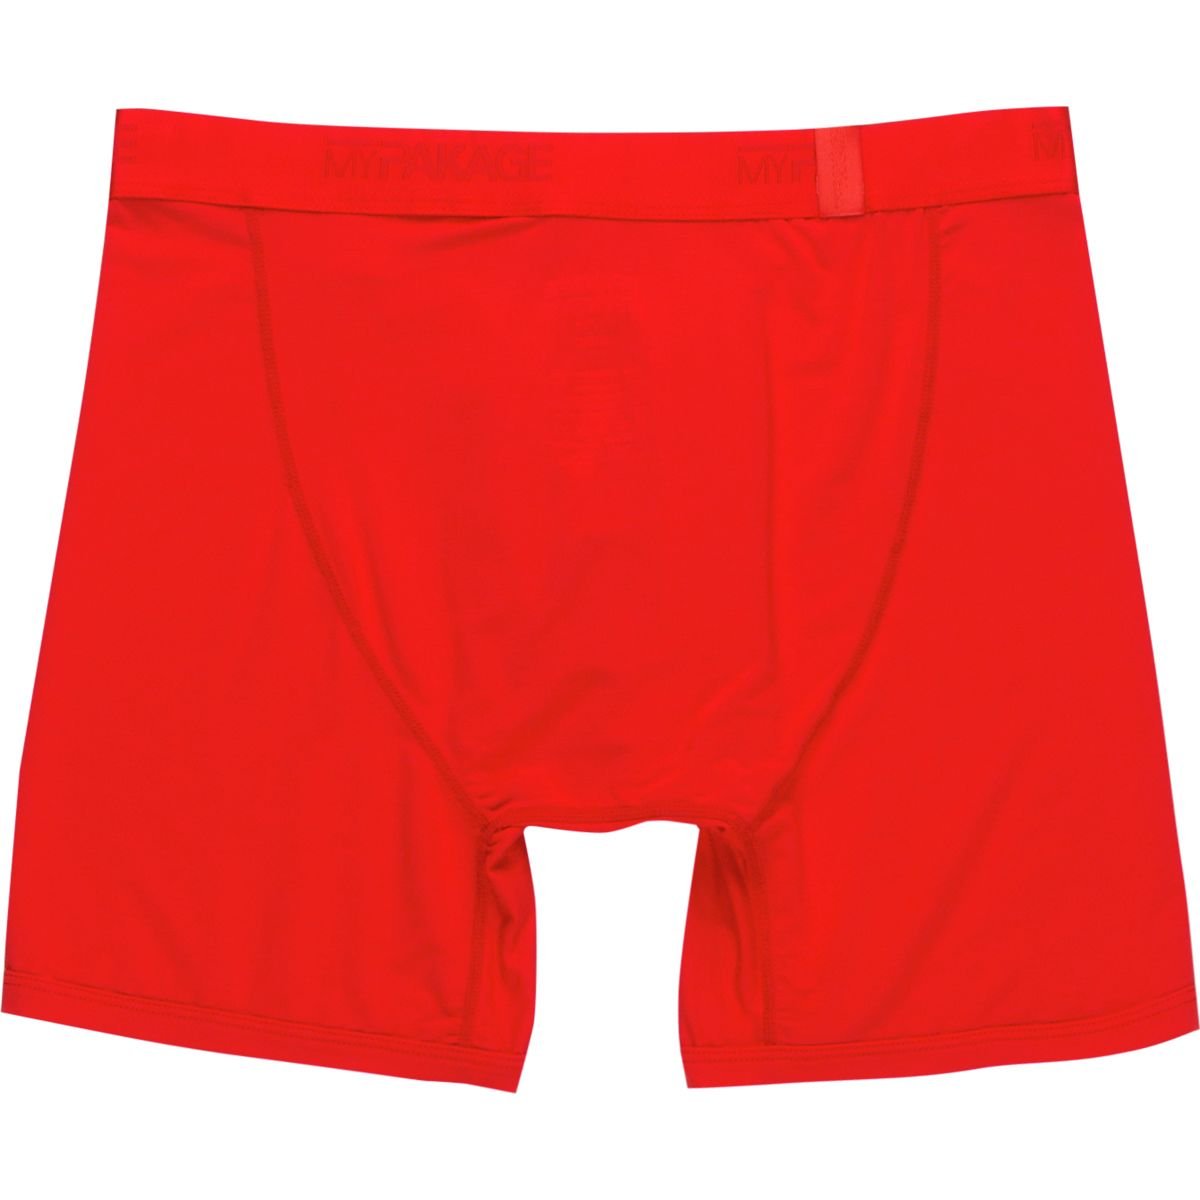 MyPakage Men's Weekend Comfort Boxer Brief Underwear